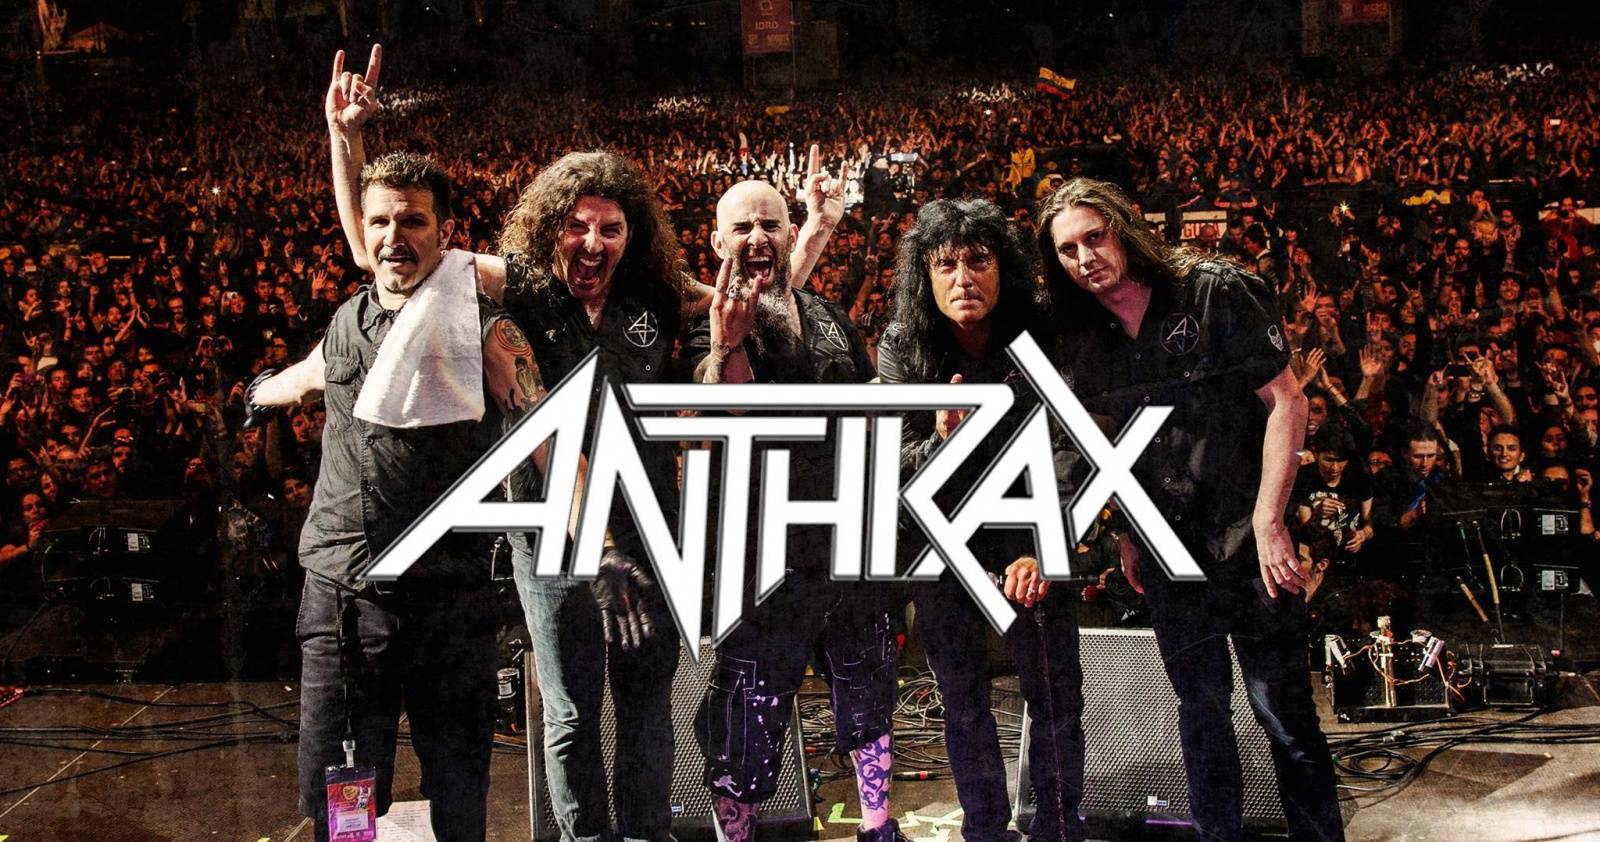 RECENZE: Anthrax ohýbají žánr, ale ne hřbet